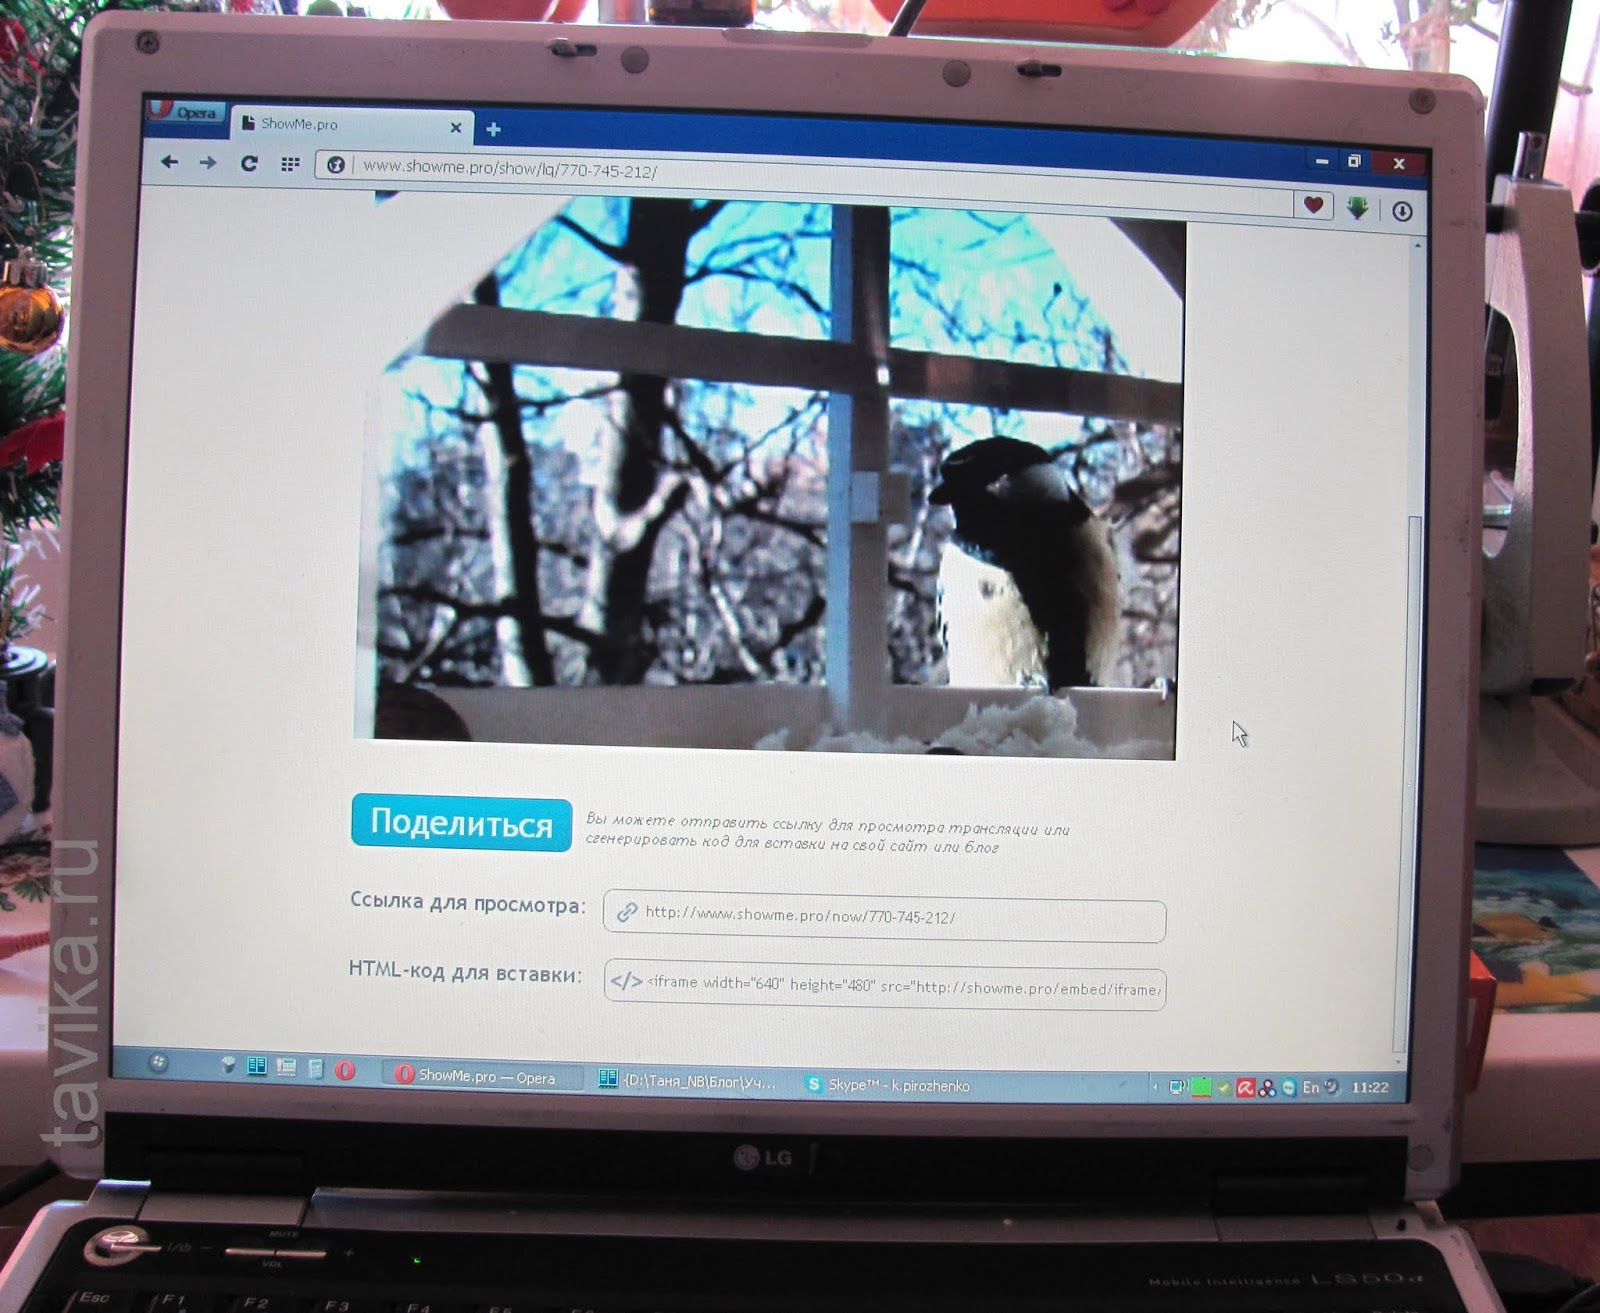 наблюдение за птицами на кормушке с помощью вебкамеры